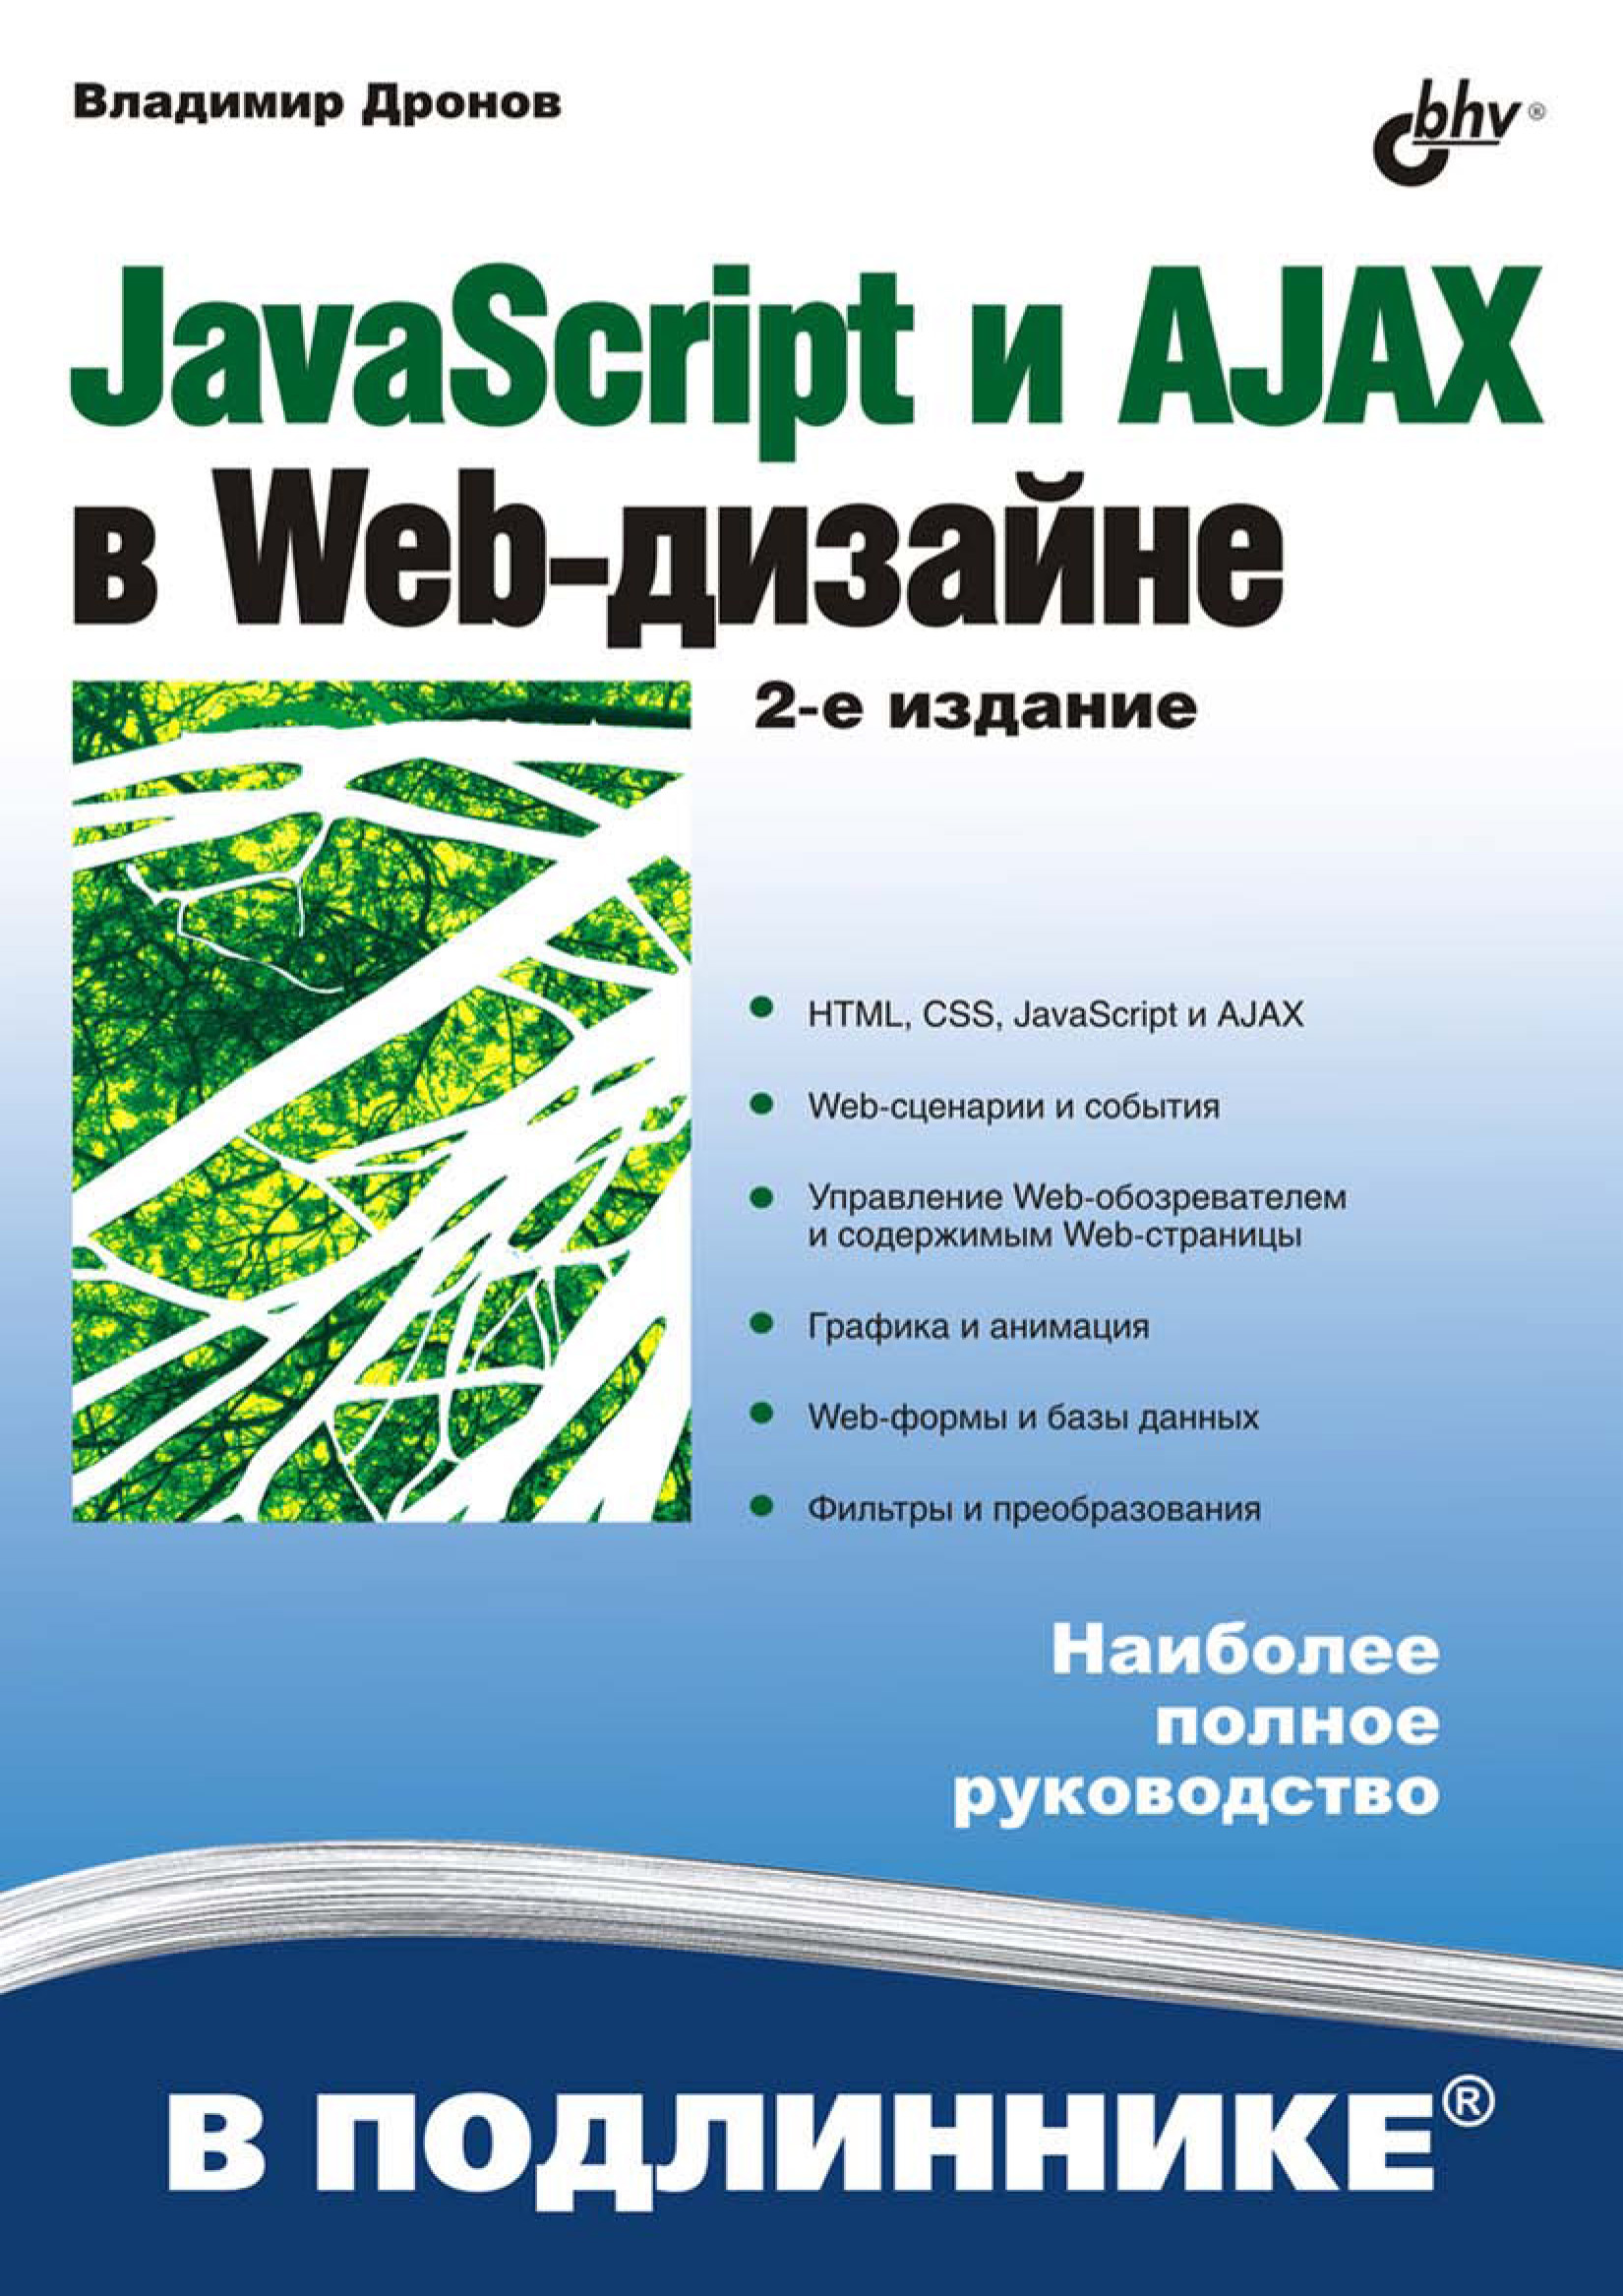 Книга В подлиннике. Наиболее полное руководство JavaScript и AJAX в Web-дизайне созданная Владимир Дронов может относится к жанру базы данных, интернет, программирование. Стоимость электронной книги JavaScript и AJAX в Web-дизайне с идентификатором 6991132 составляет 319.00 руб.